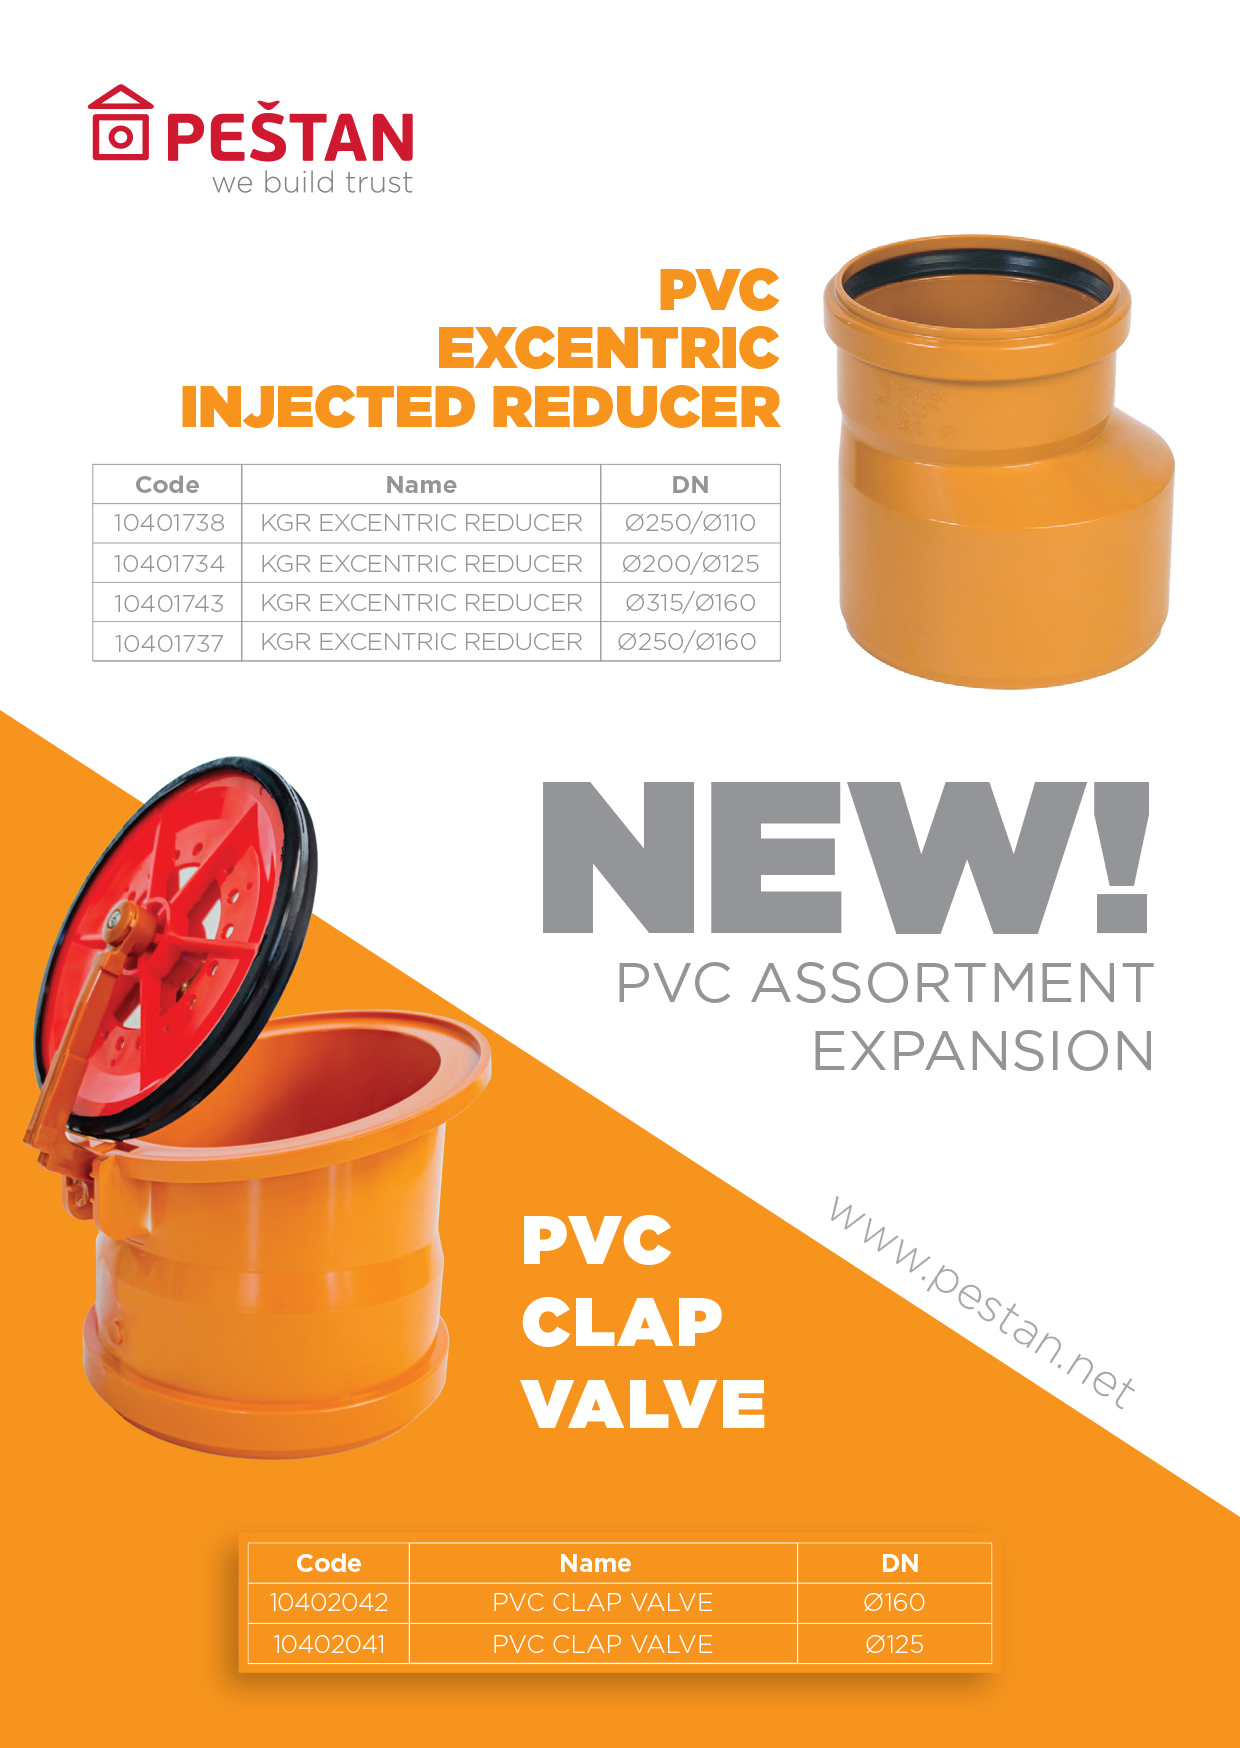 PVC Assortment expansion